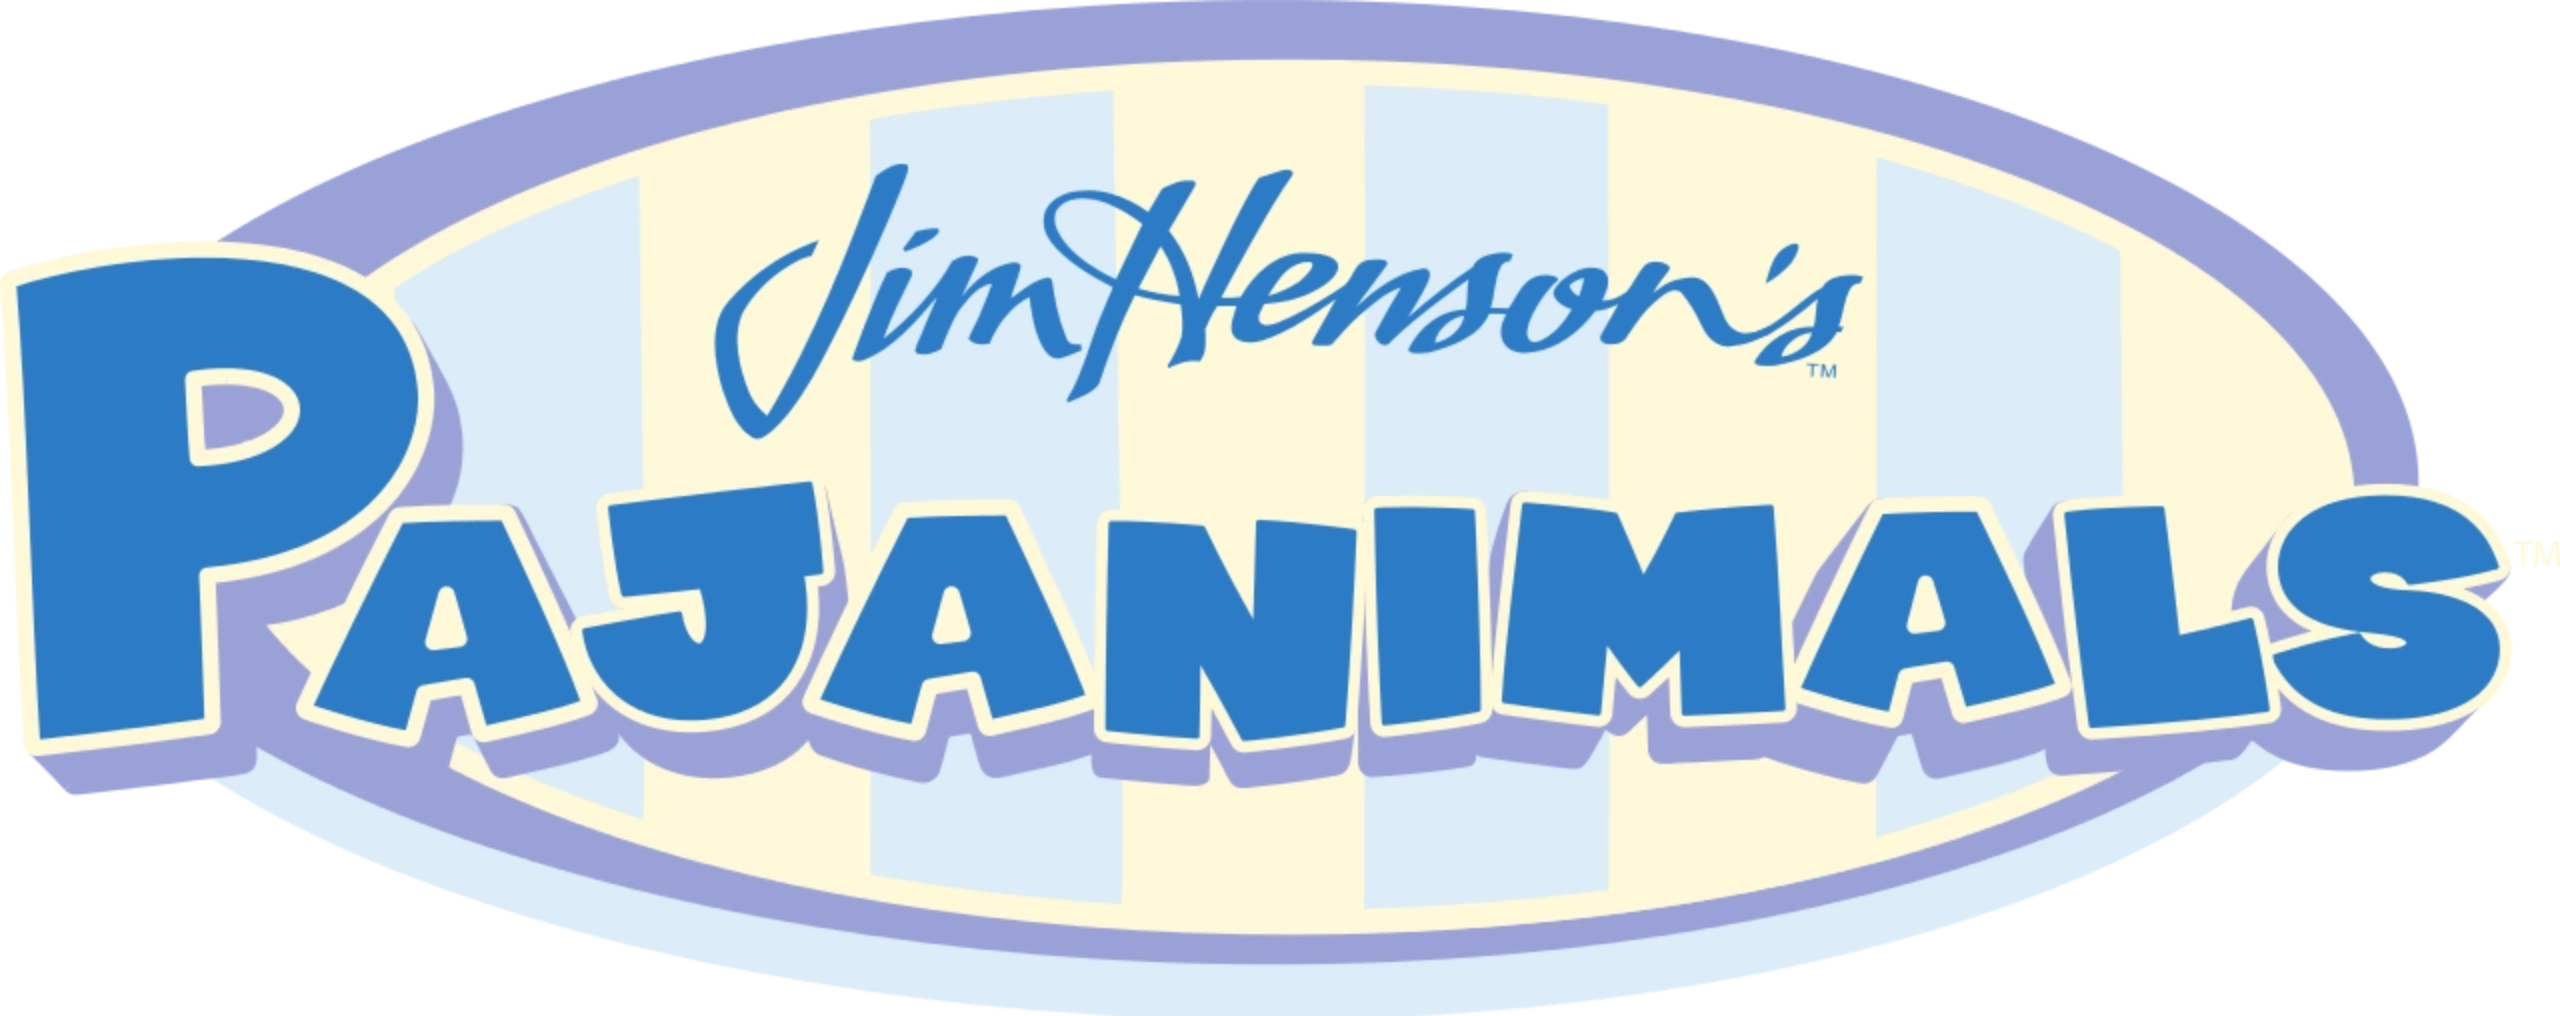 Jim Henson\'s Pajanimals